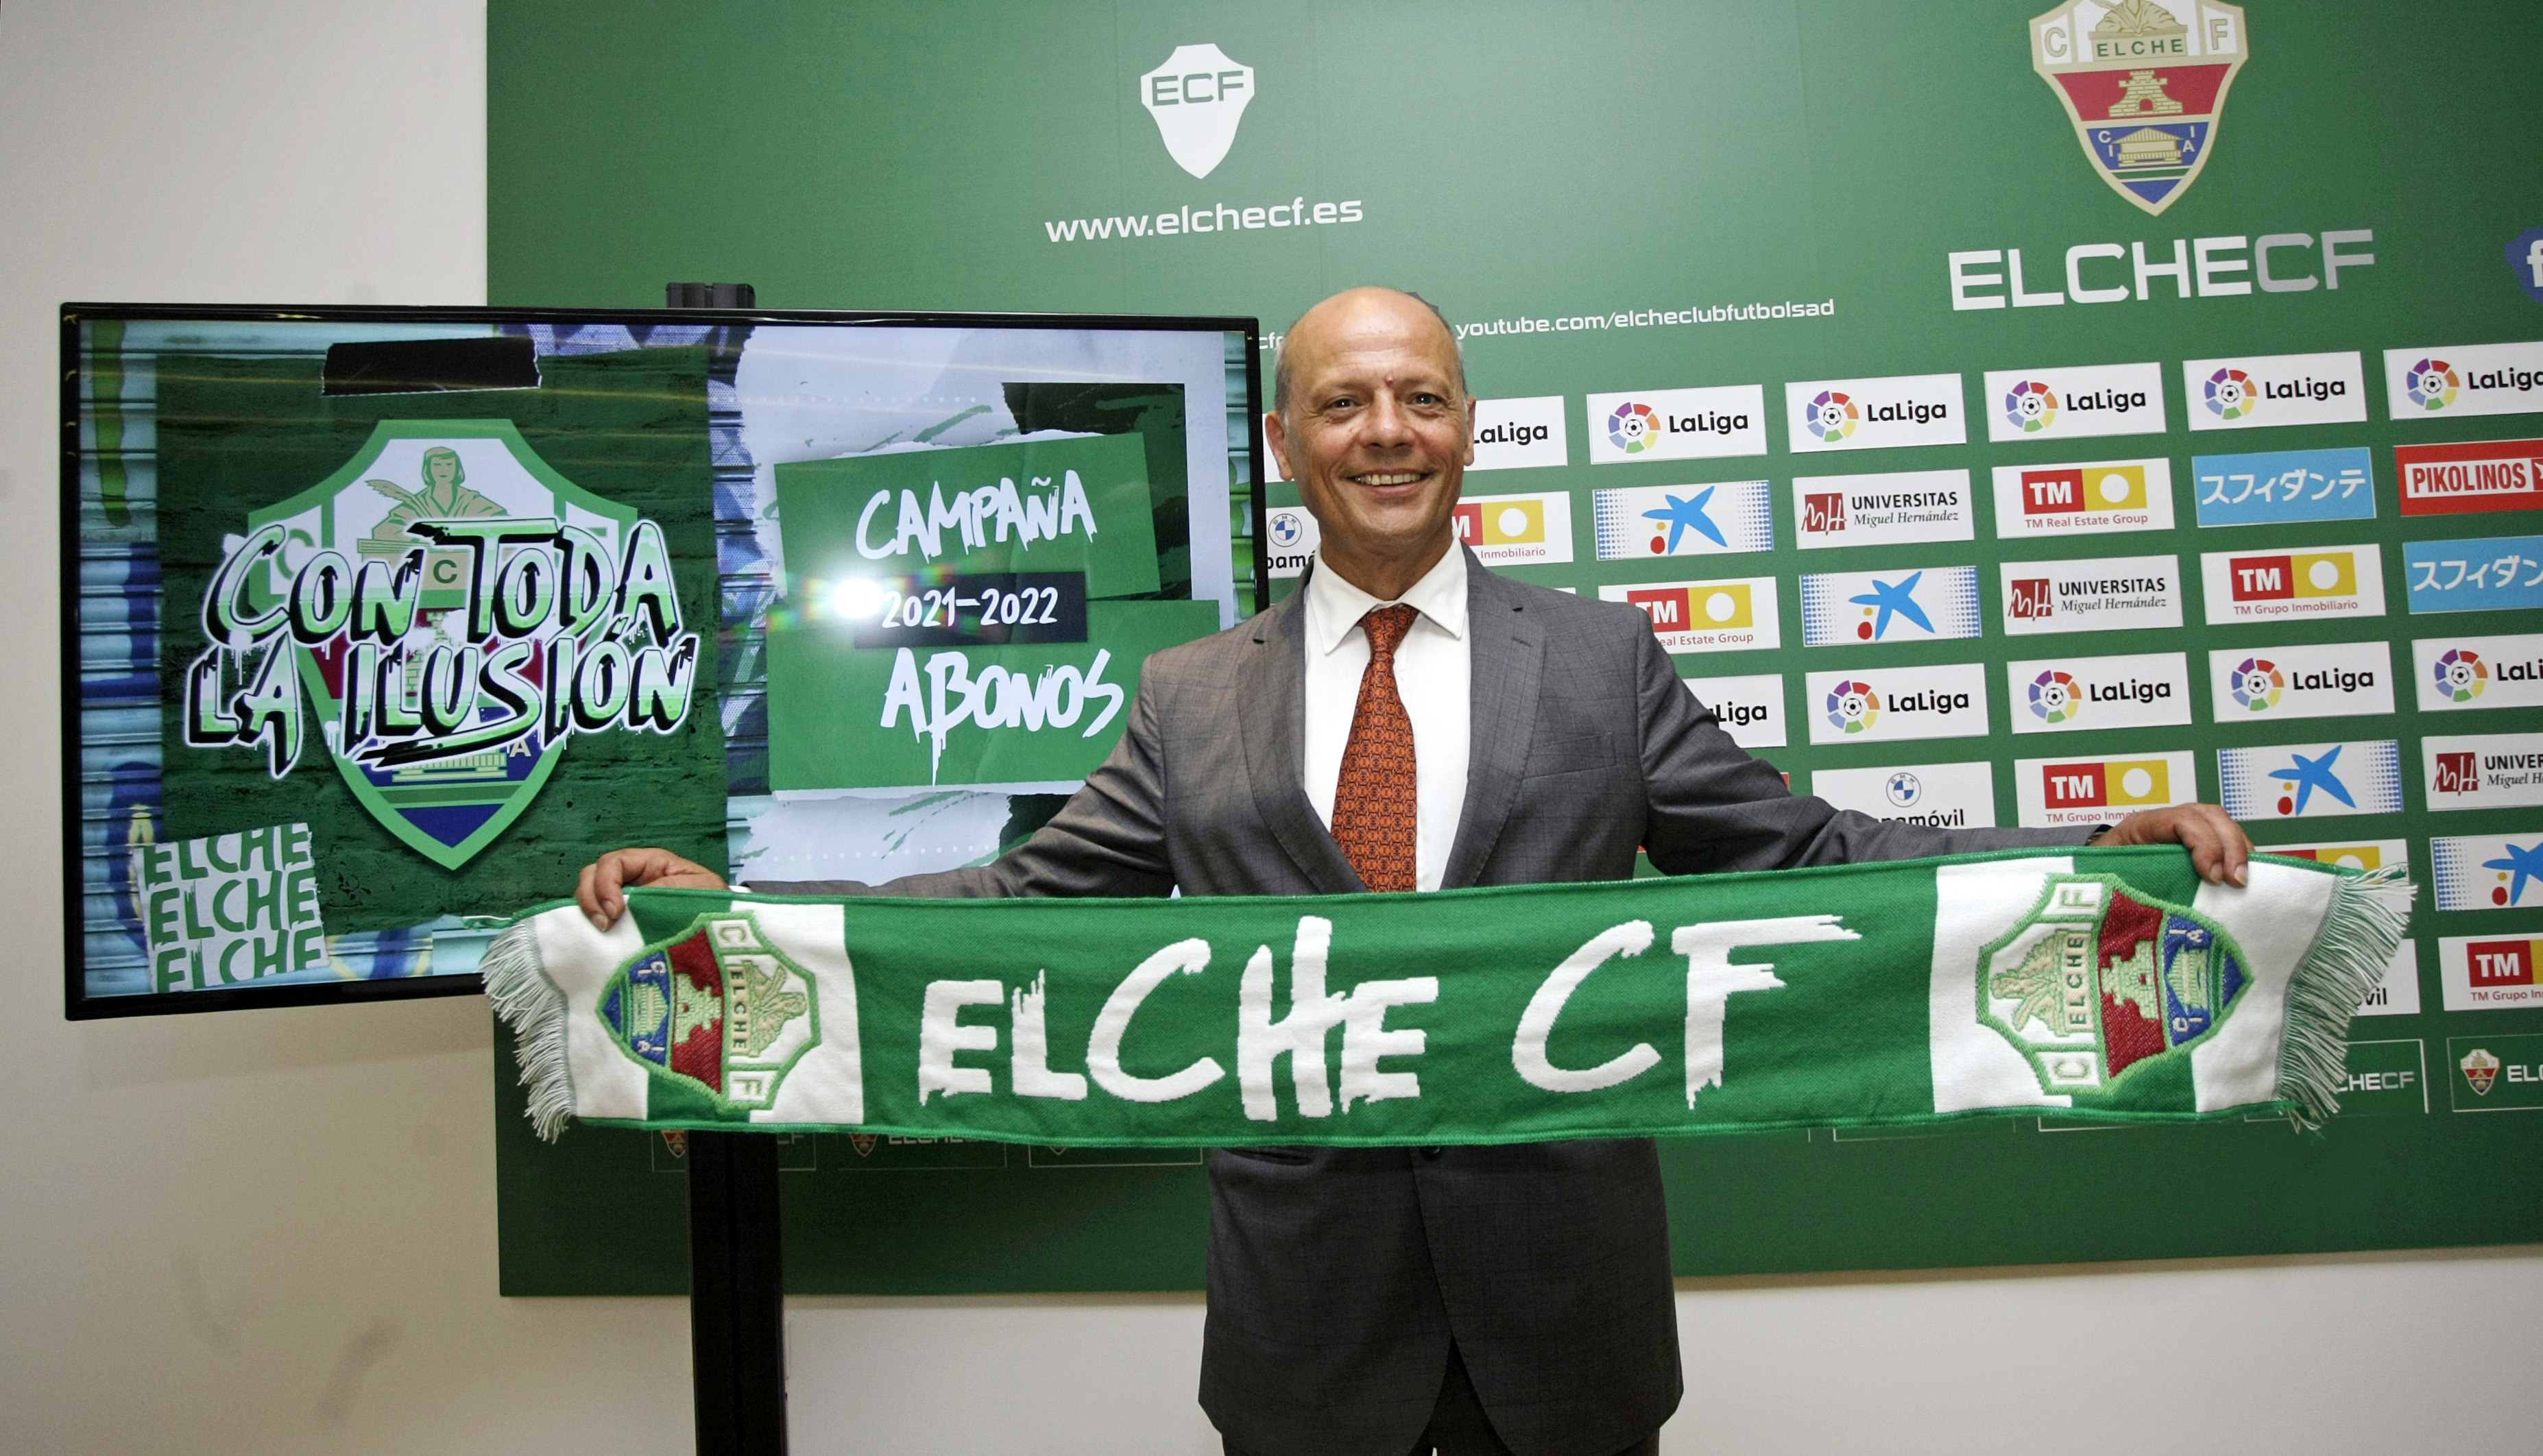 Joaquín Buitrago, presidente del Elche CF, posa con la bufanda de la campaña de abonos / Elche CF - Sonia Arcos